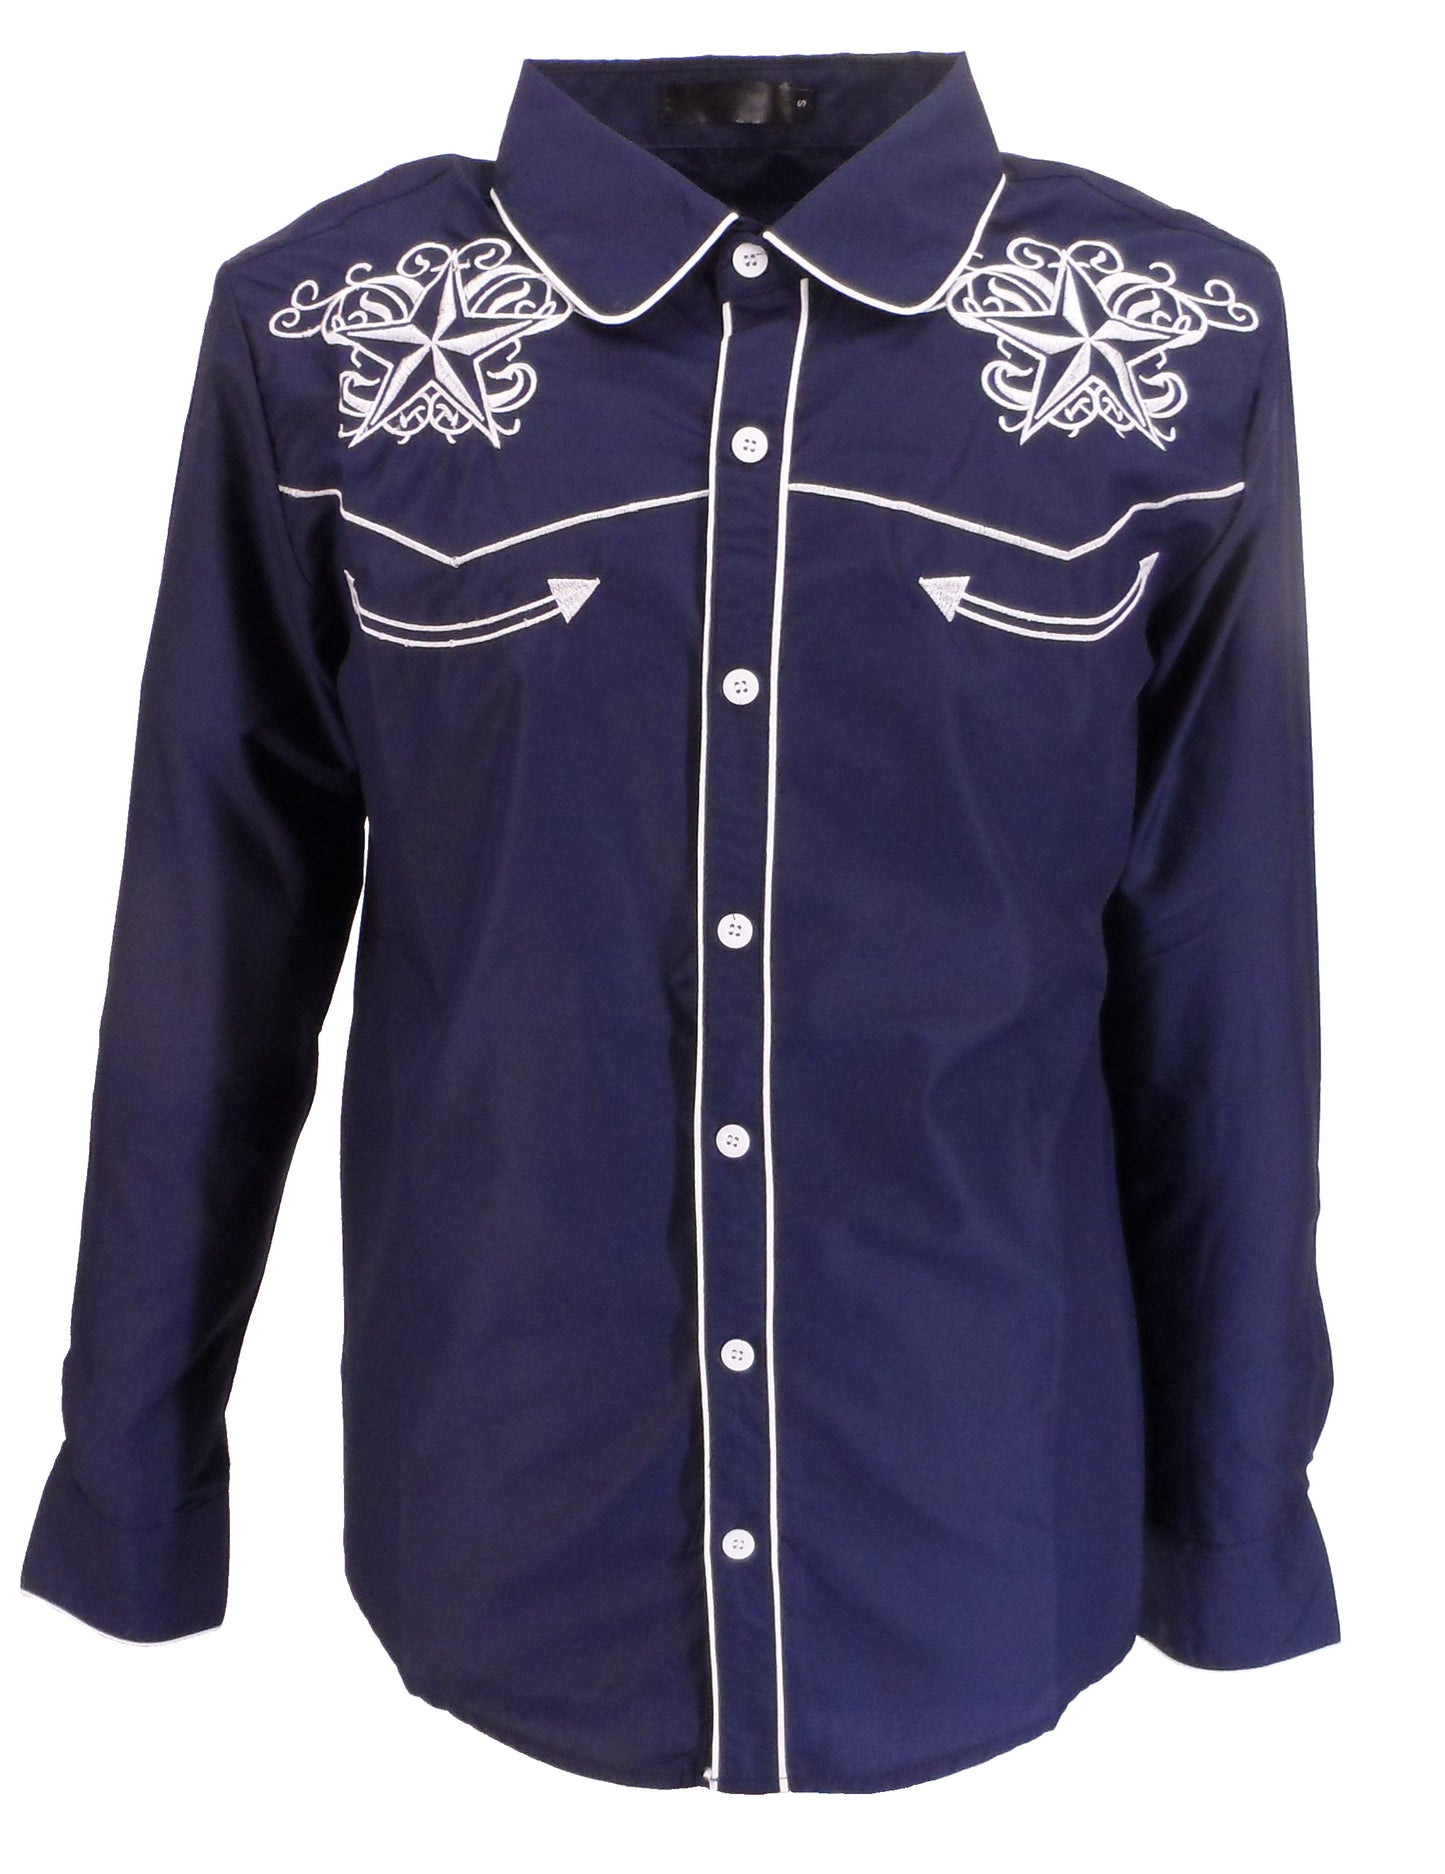 Mazeys Herren-Western-Star-Cowboy-Vintage-/Retro-Hemden In Marineblau